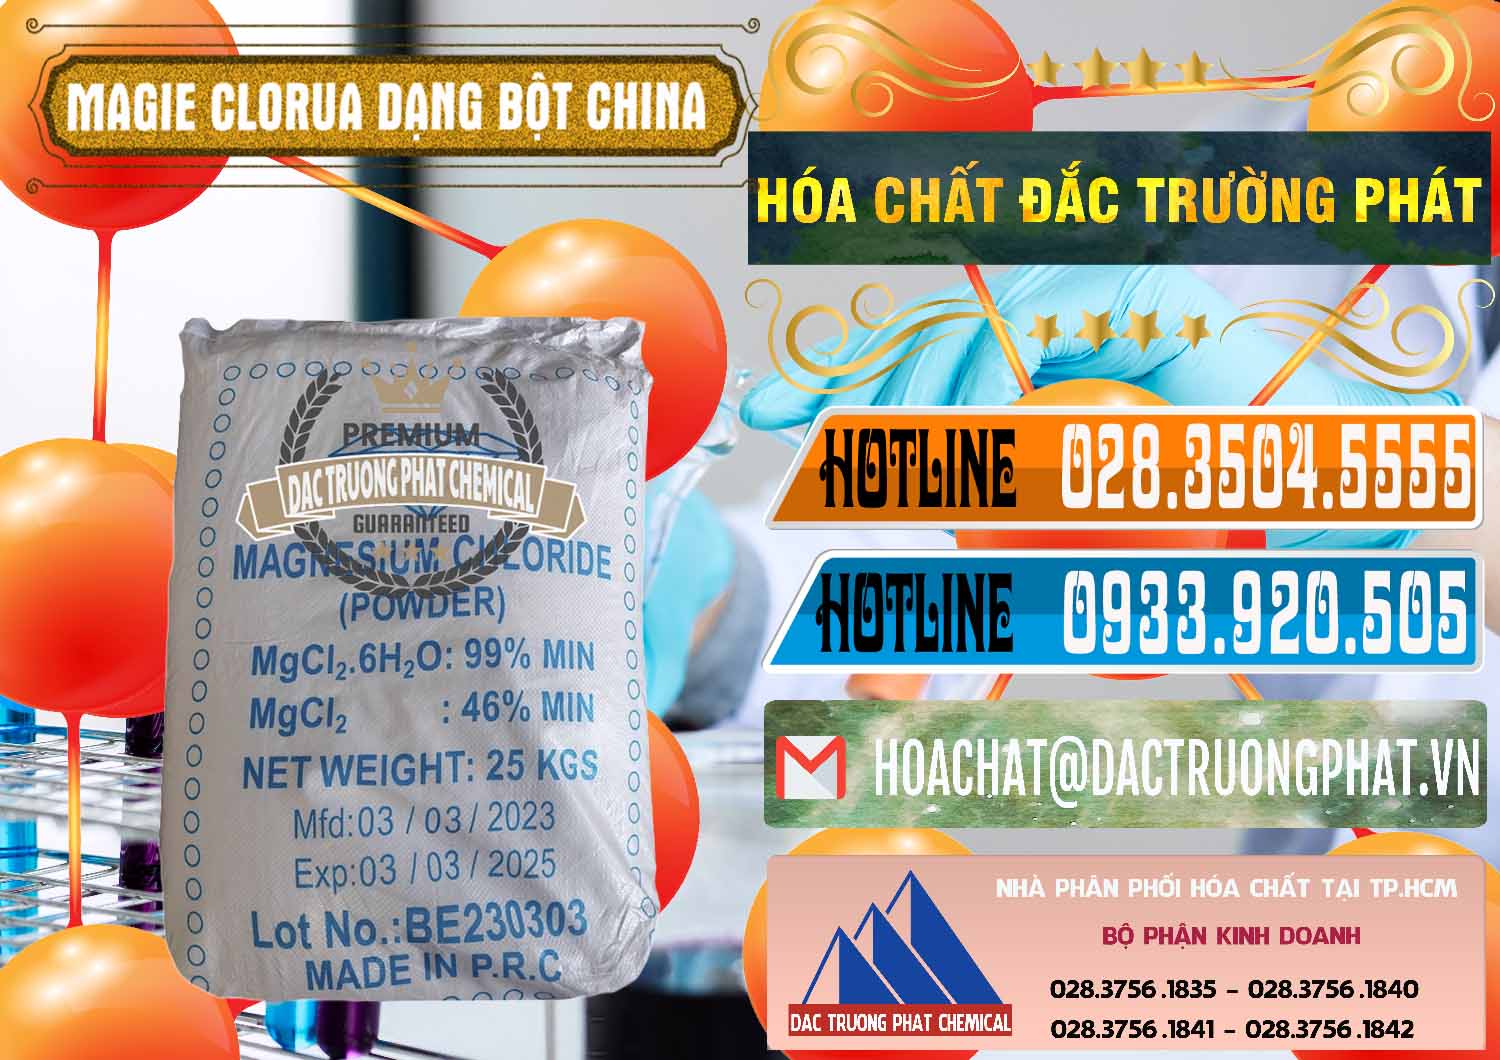 Cty chuyên phân phối và bán Magie Clorua – MGCL2 96% Dạng Bột Logo Kim Cương Trung Quốc China - 0387 - Công ty chuyên cung cấp & nhập khẩu hóa chất tại TP.HCM - stmp.net